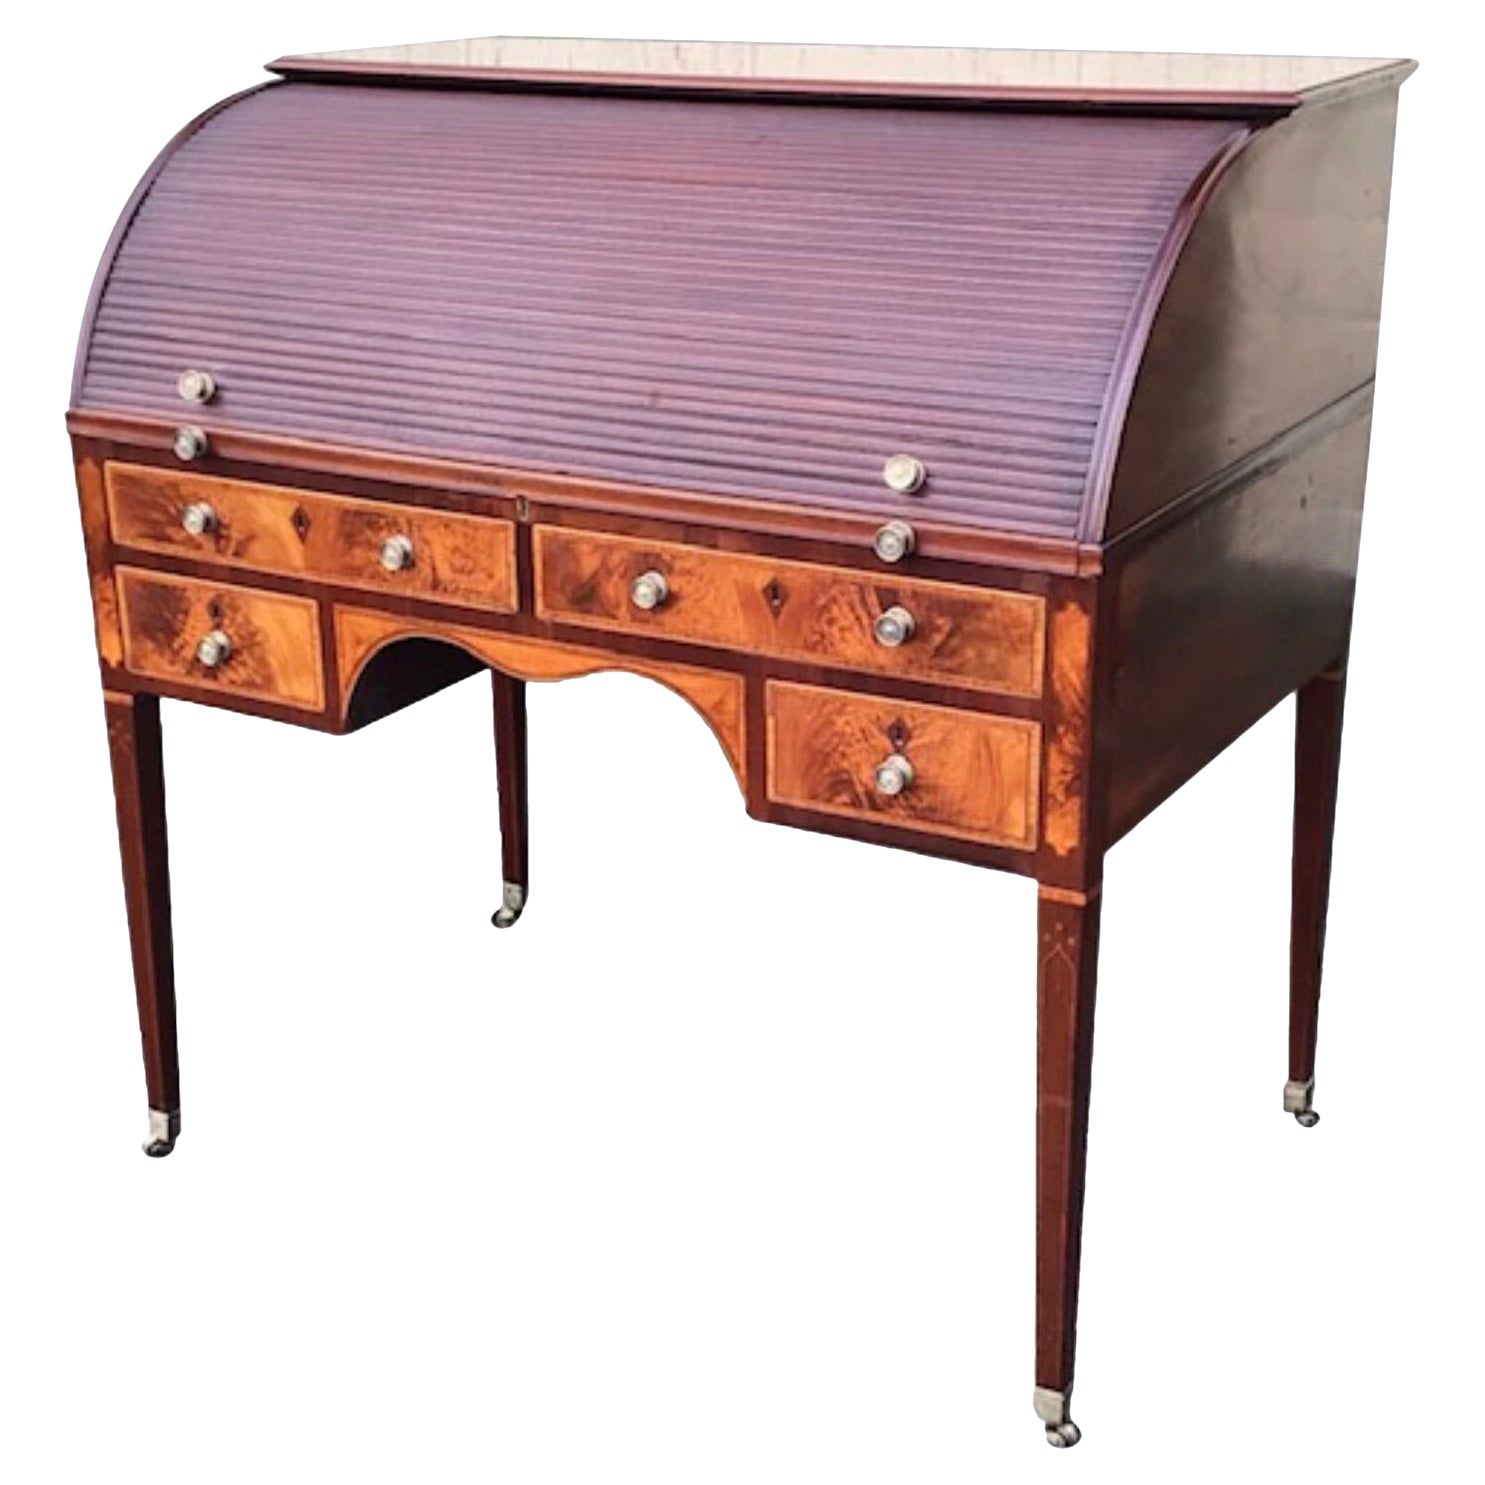 Rare Georgian Hepplewhite Period Inlaid Mahogany Antique Tambour Estate Desk For Sale